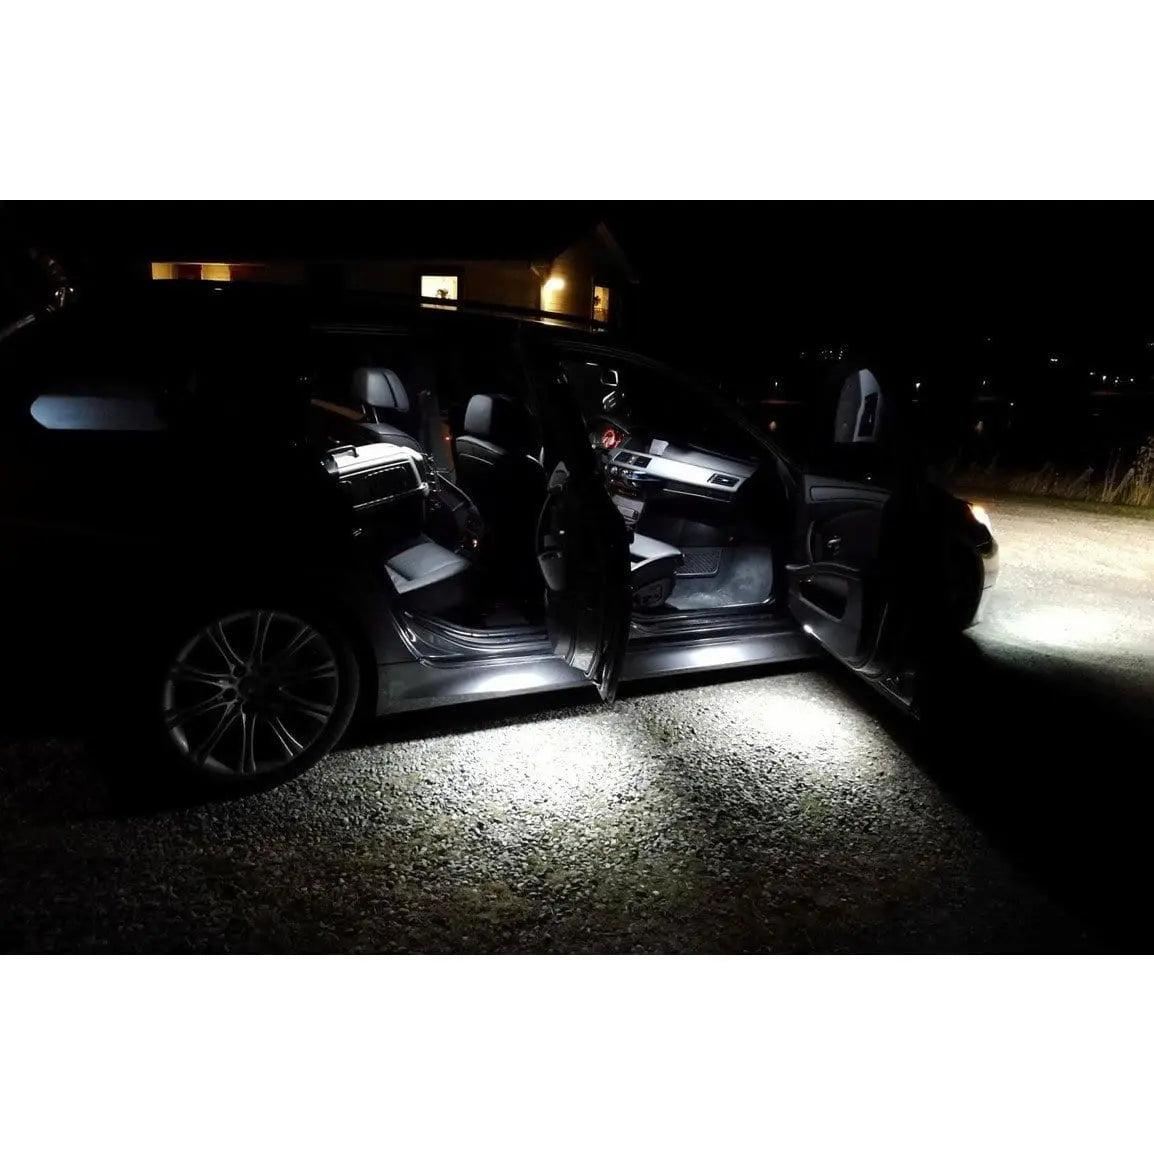 LED fotbrønn / under dør lys / innstegslys  til BMW E90 E60 og mange andre (Sett) - Lyshelten.no